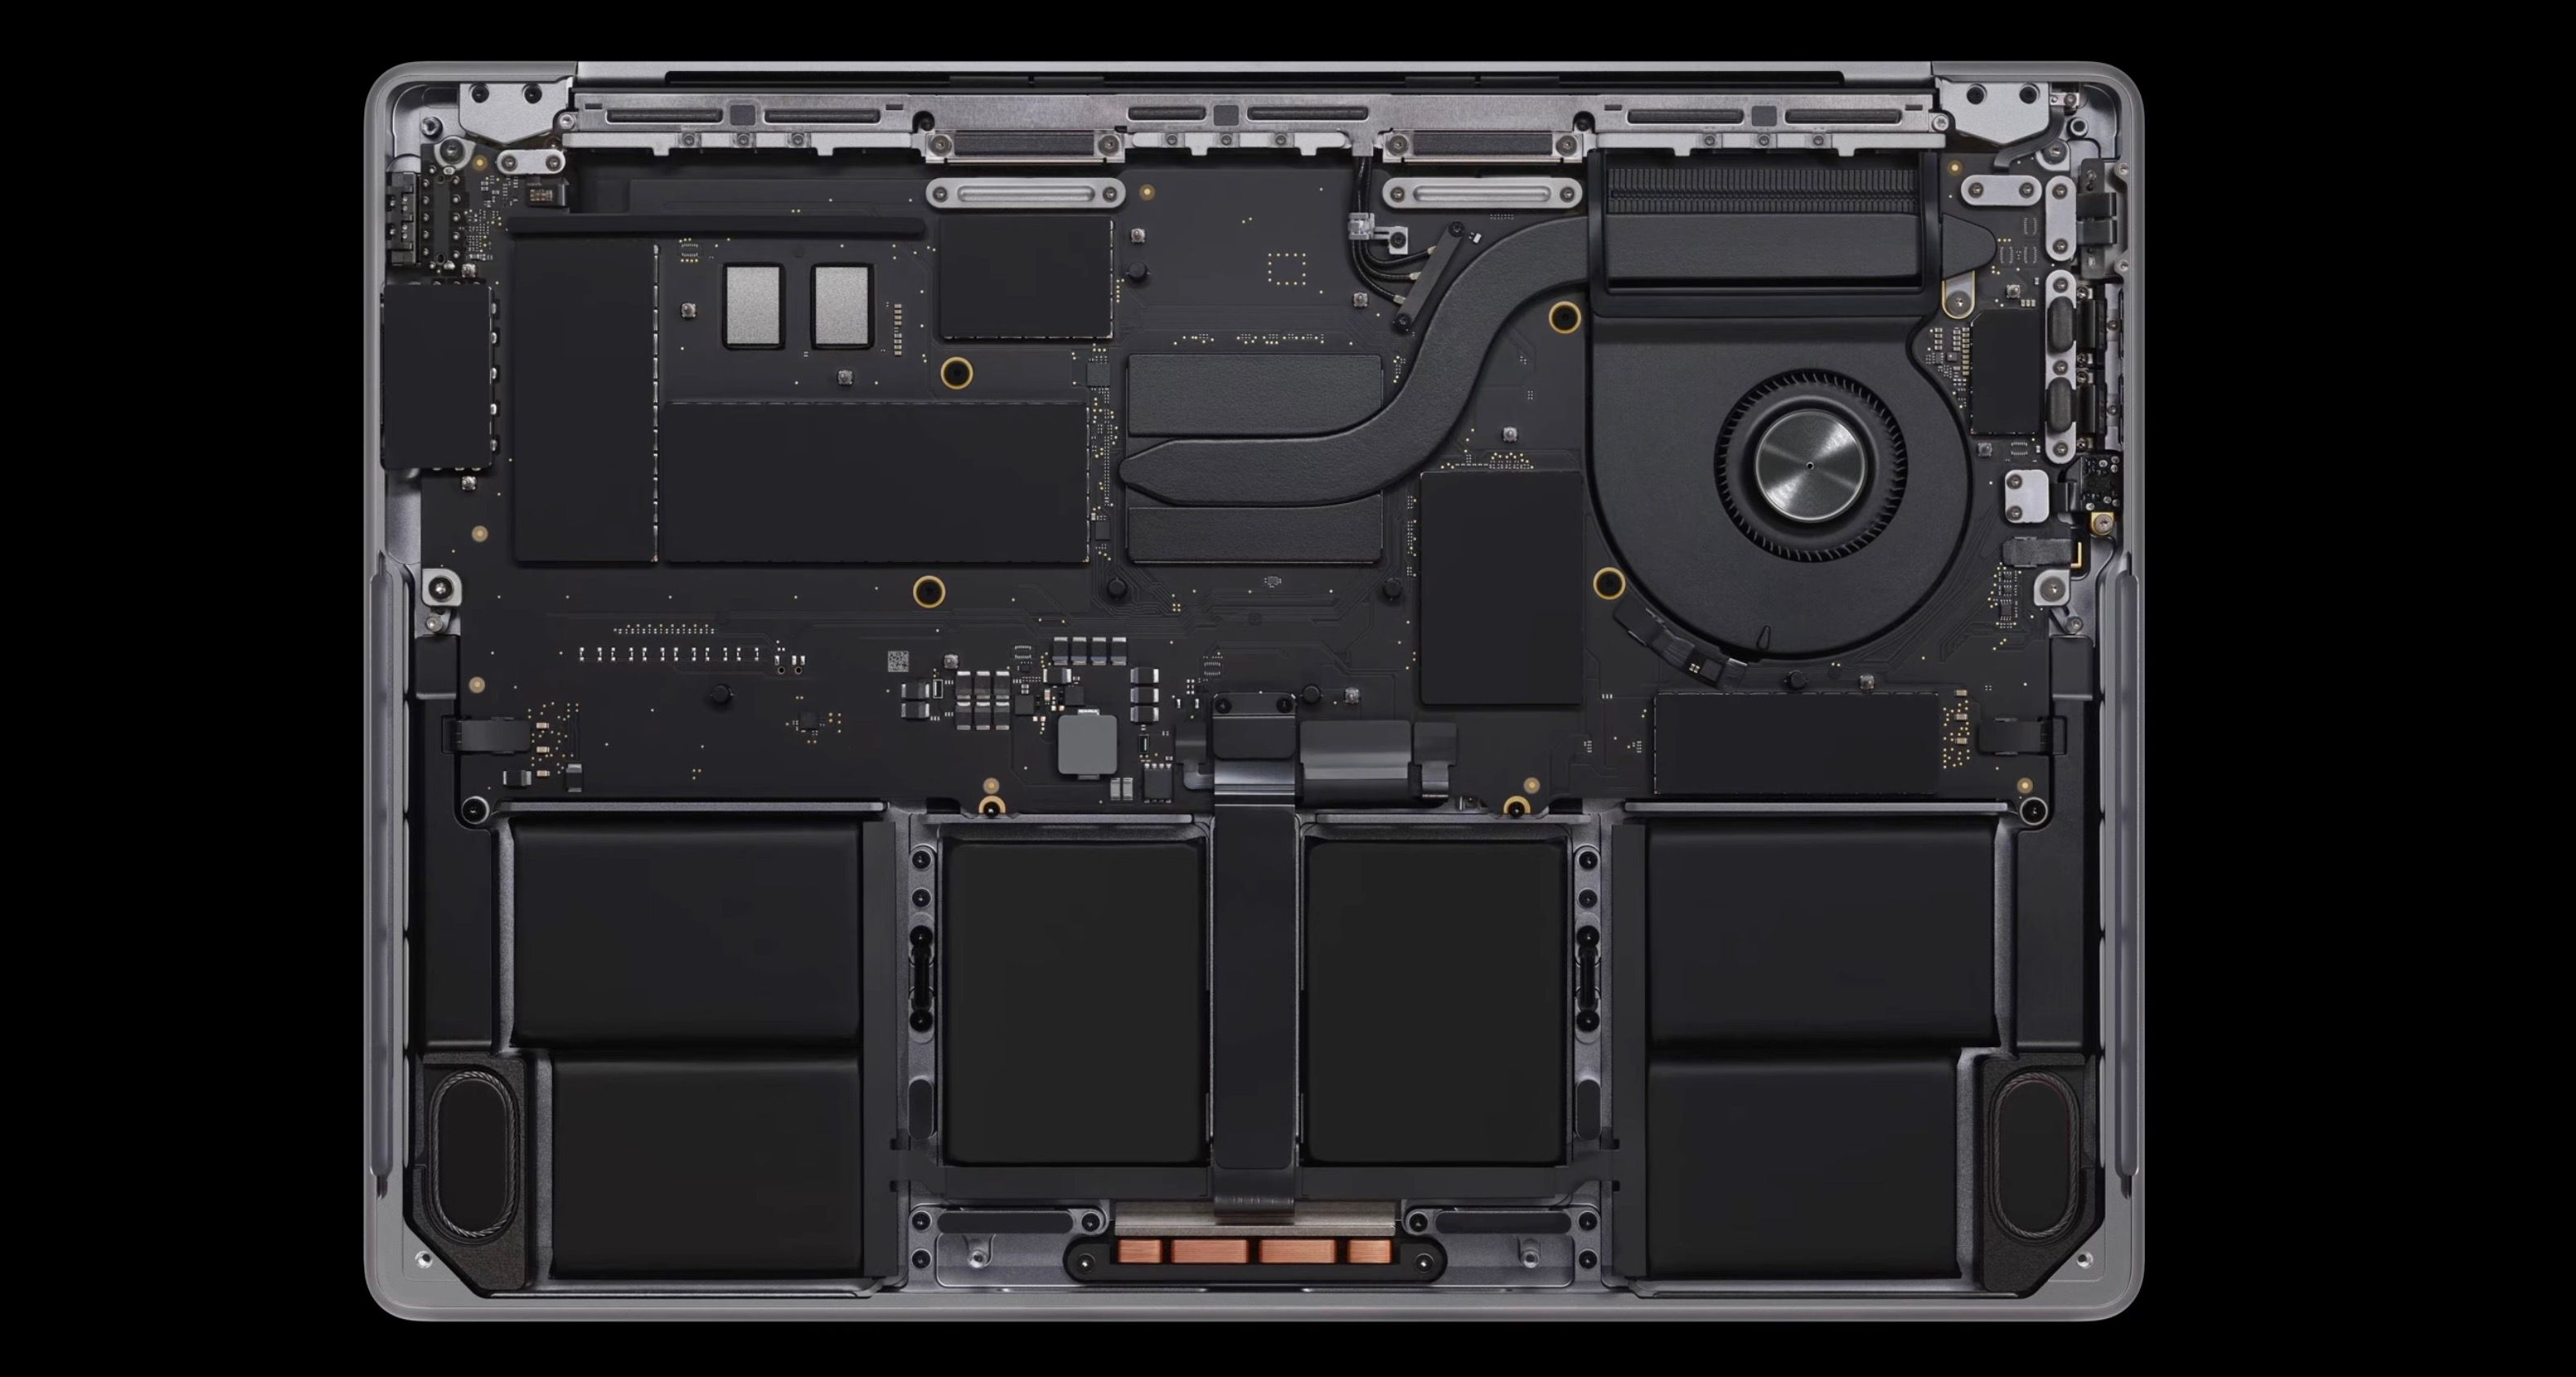 M3 MacBook Pro internals